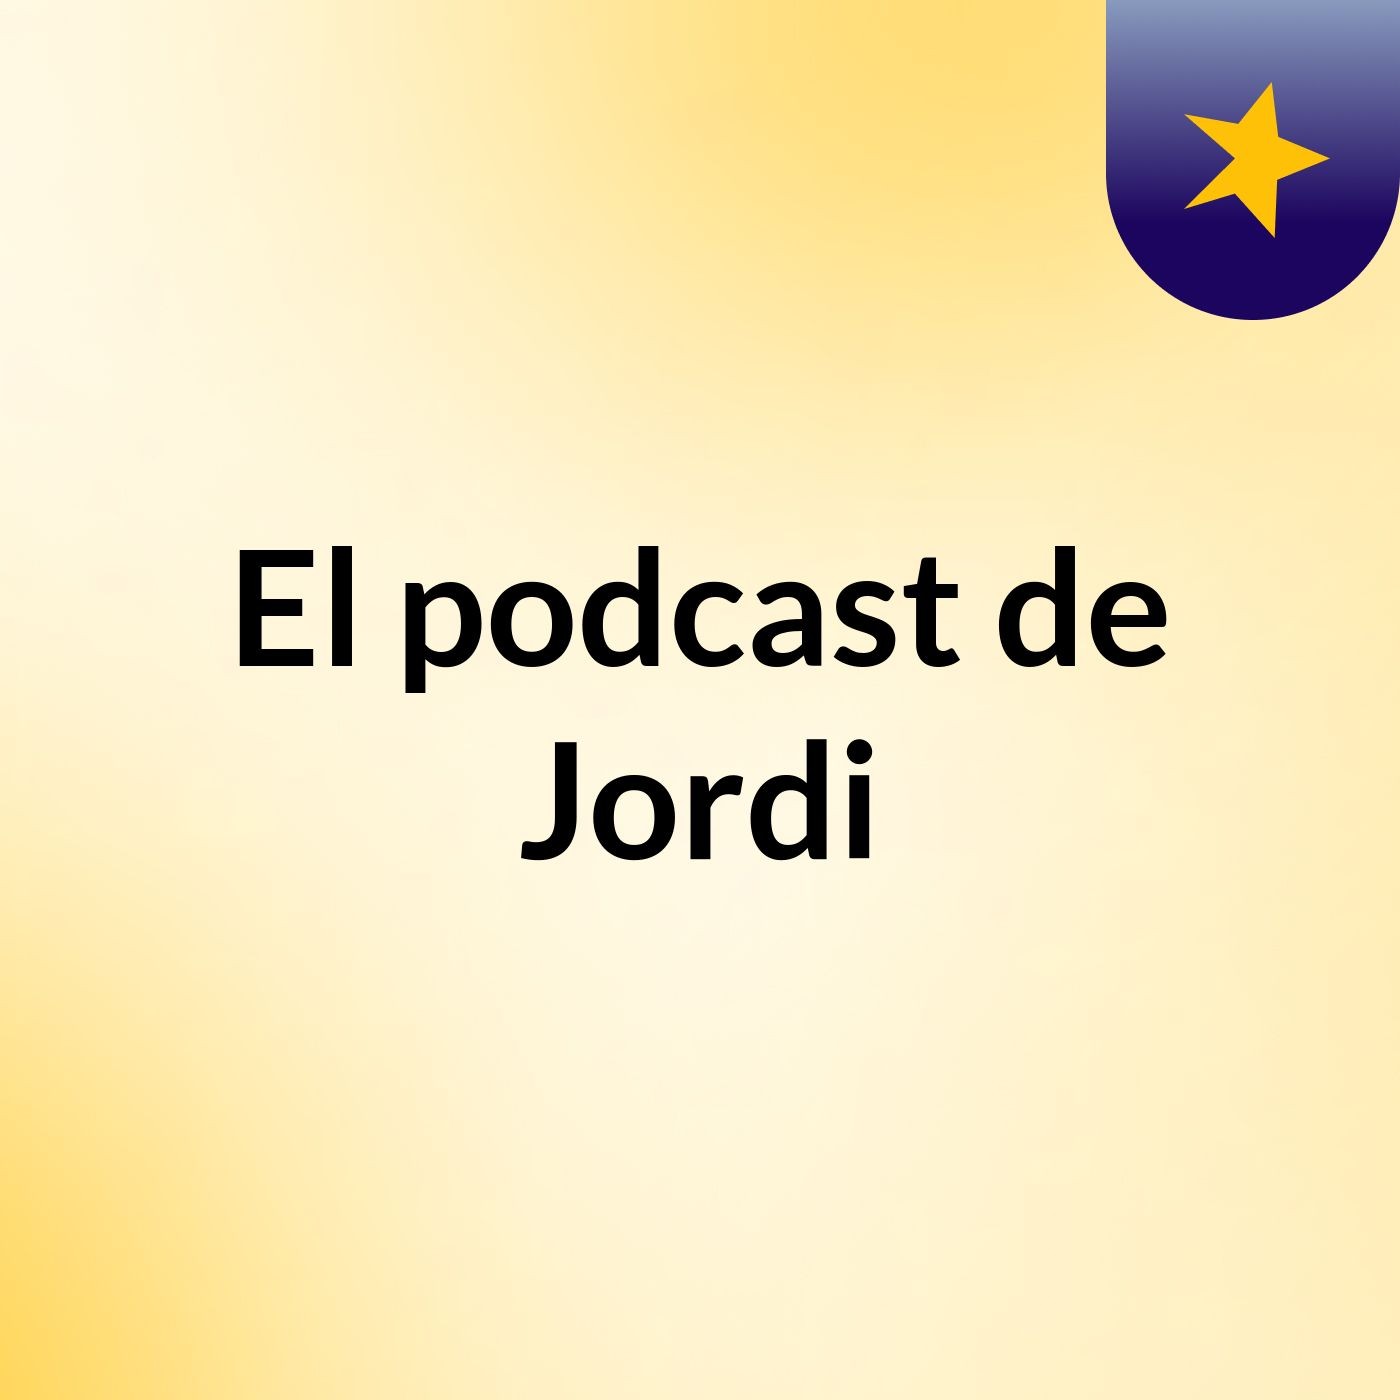 El podcast de Jordi